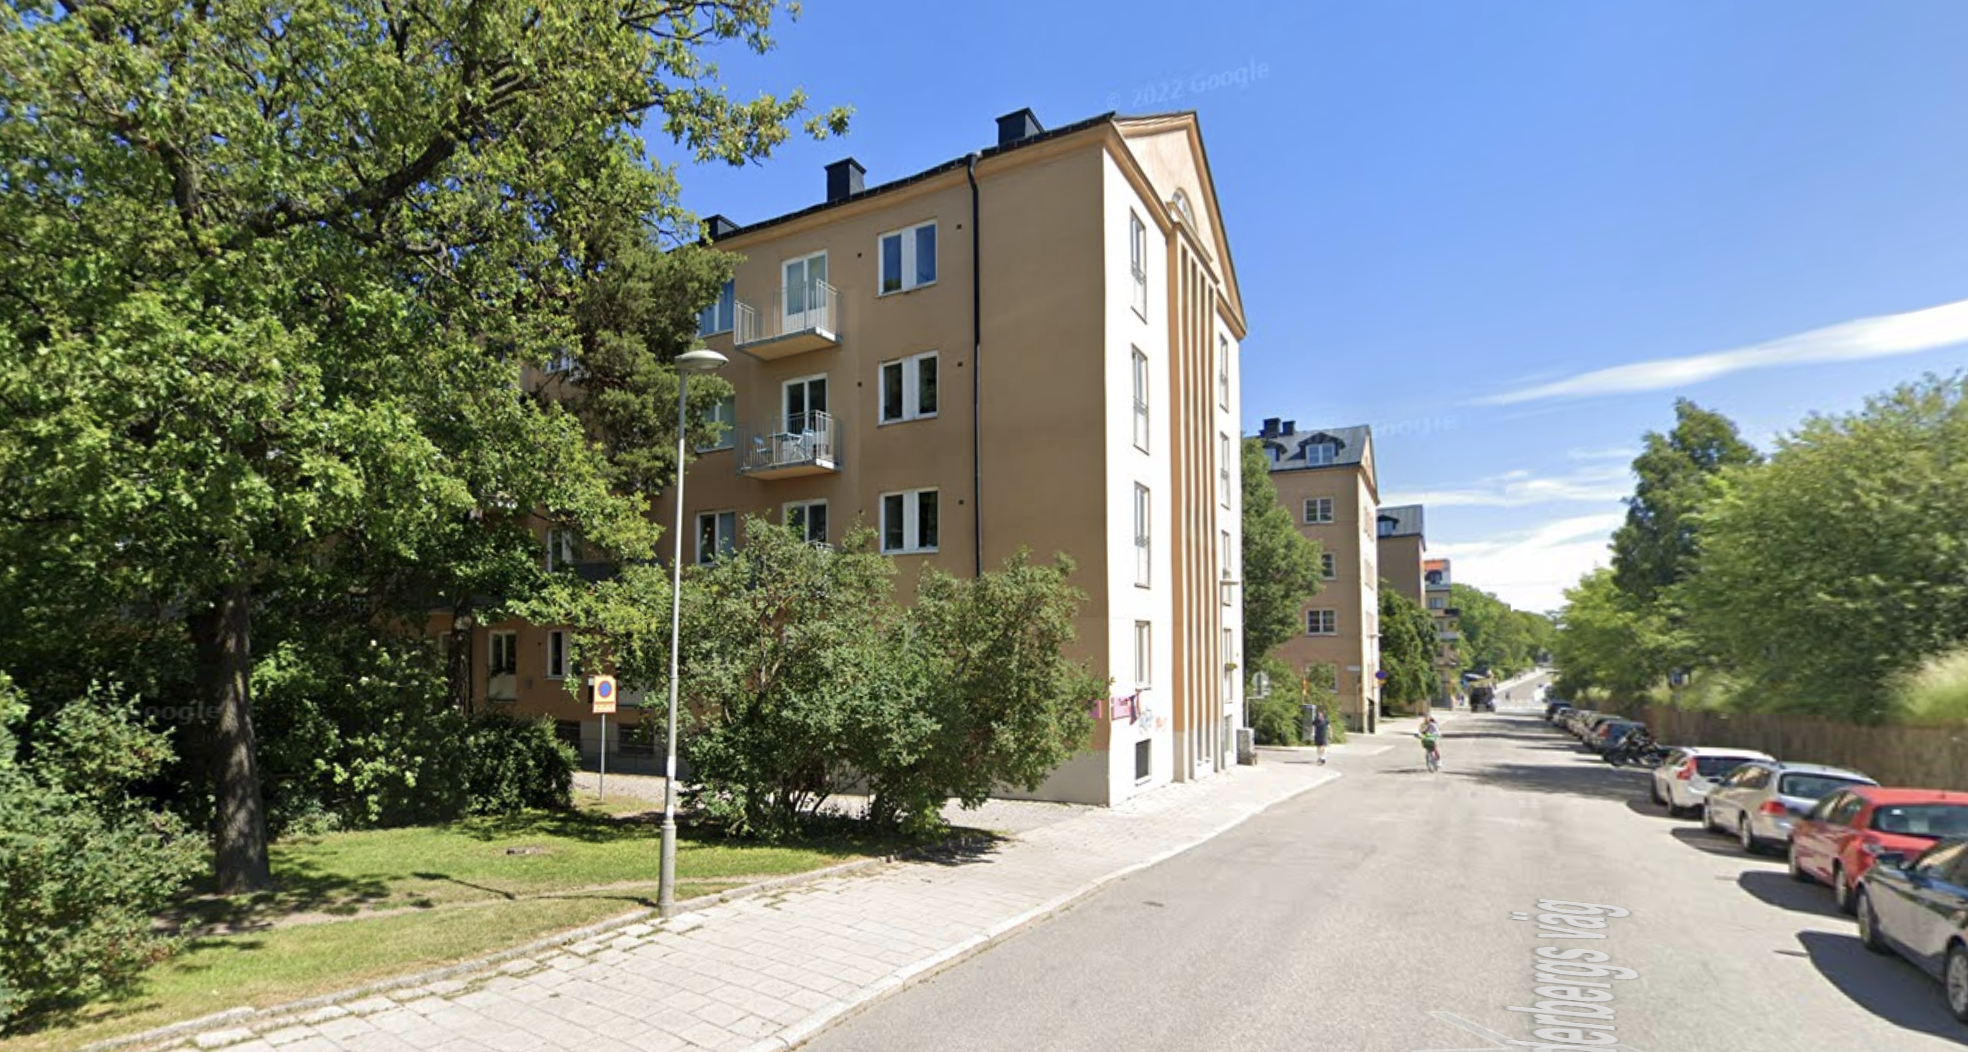 Как выглядит бюджетное жильё в дорогой Швеции? Одинокая хозяйка показала свои 28 квадратов